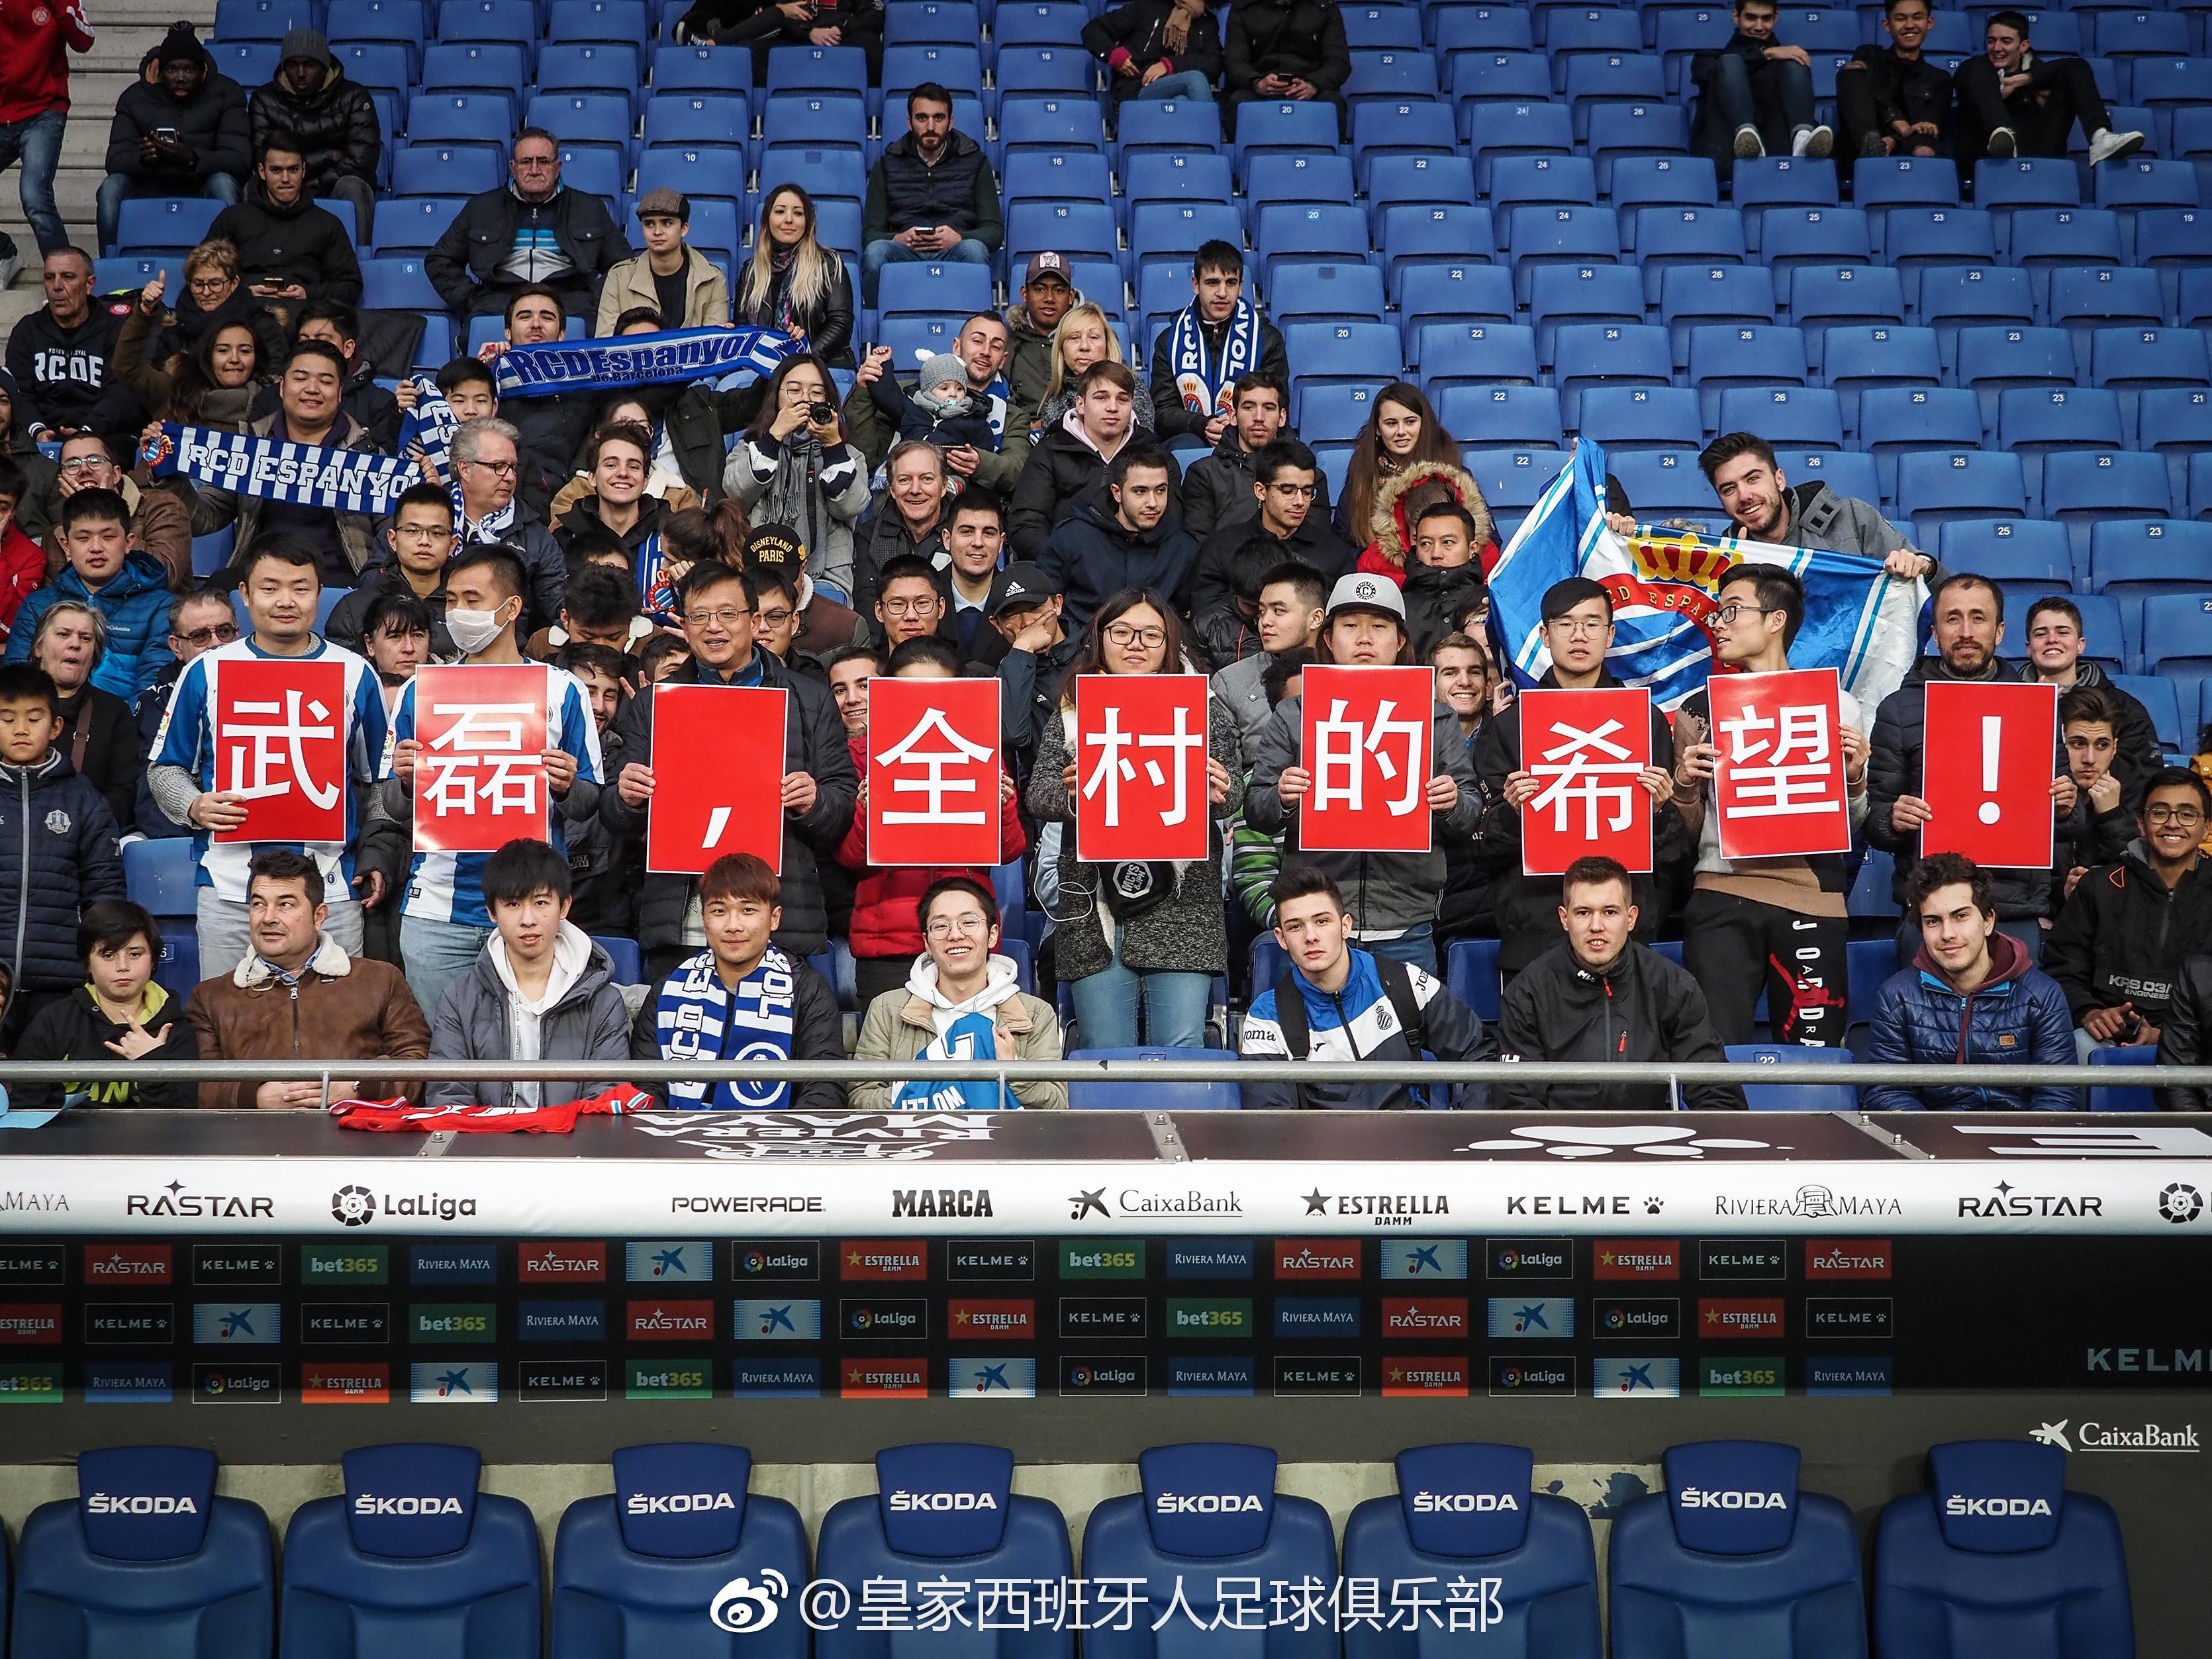 武磊亮相遭西班牙球迷嘲讽:看台上全是中国人